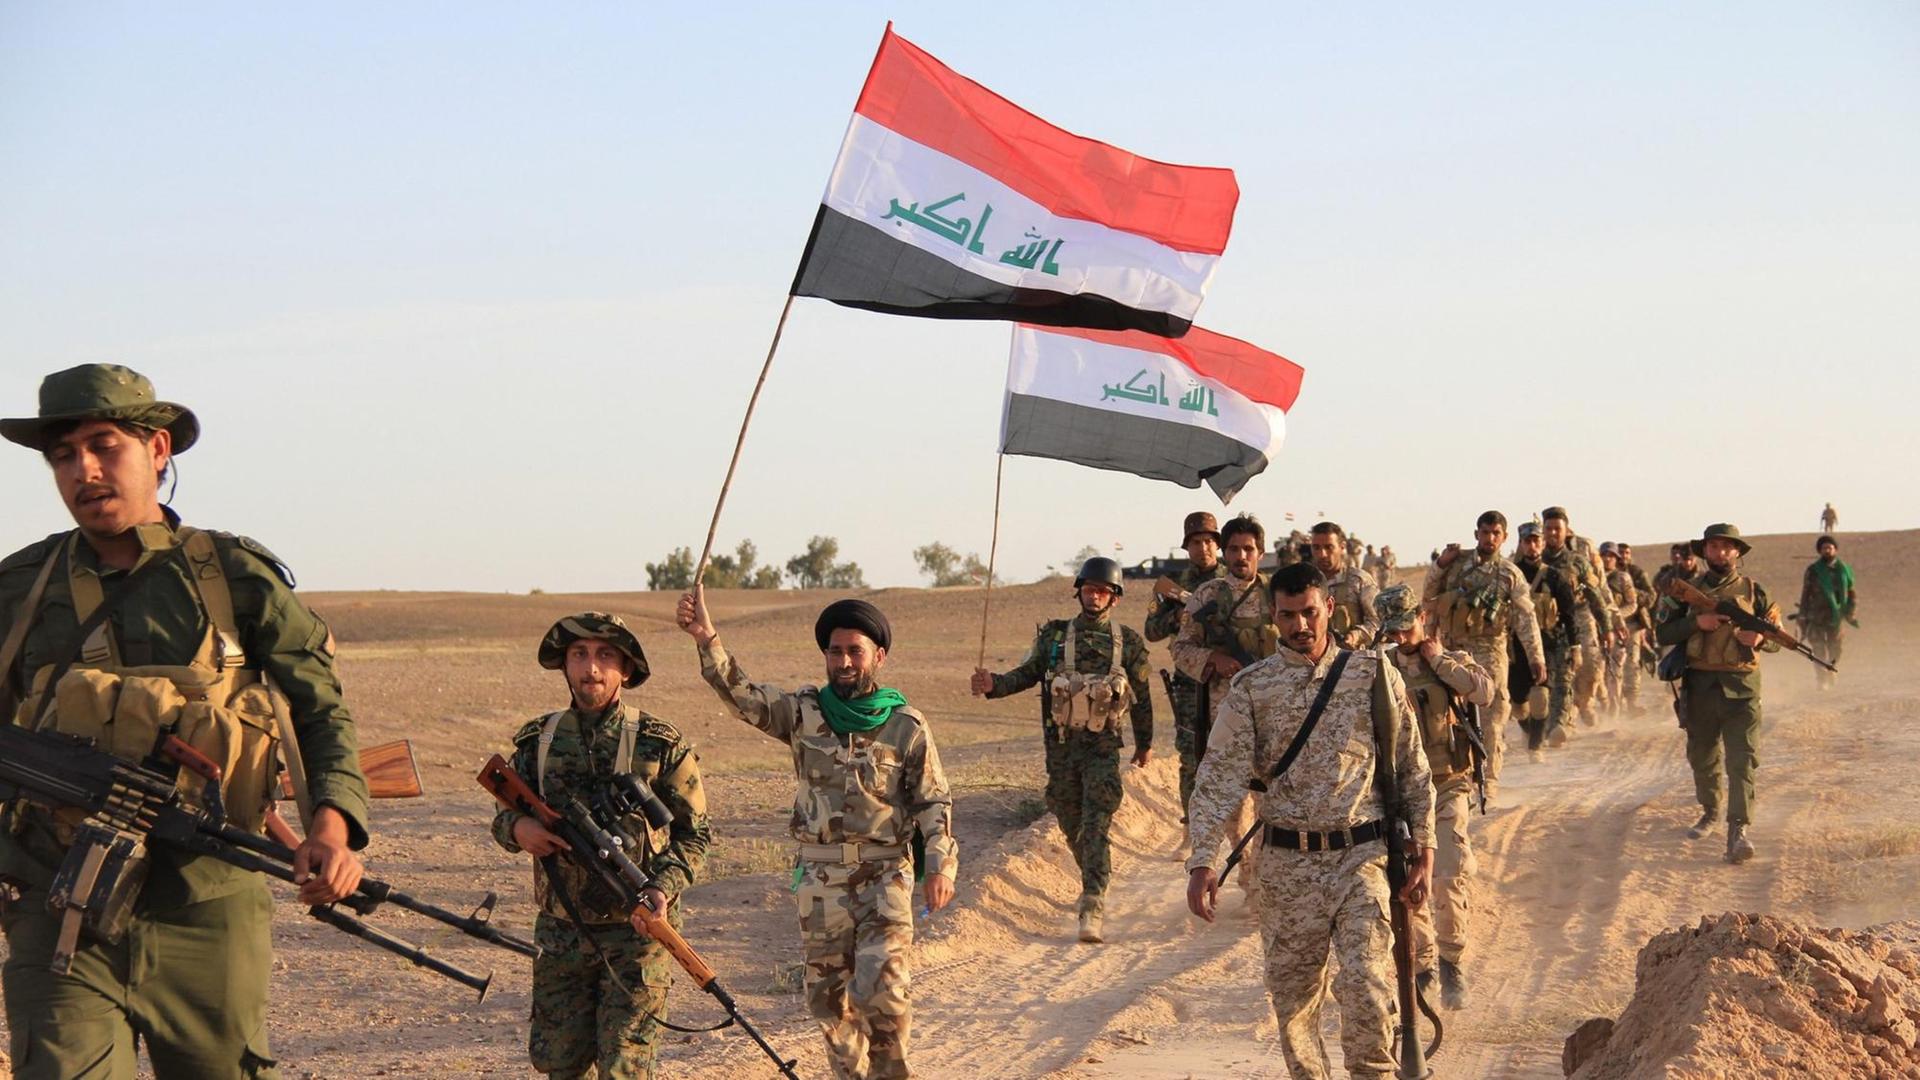 Irakische Soldaten und Mitgliedern privater Milizen, die auf Regierungsseite kämpfen, tragen am 31. März 2015 in Tikrit die Flagge des Irak während eines Kampfes gegen den sogenannten "Islamischen Staat" . Auf der Flagge ist der arabischen Ausdruck "Allahu Akbar" zu lesen.